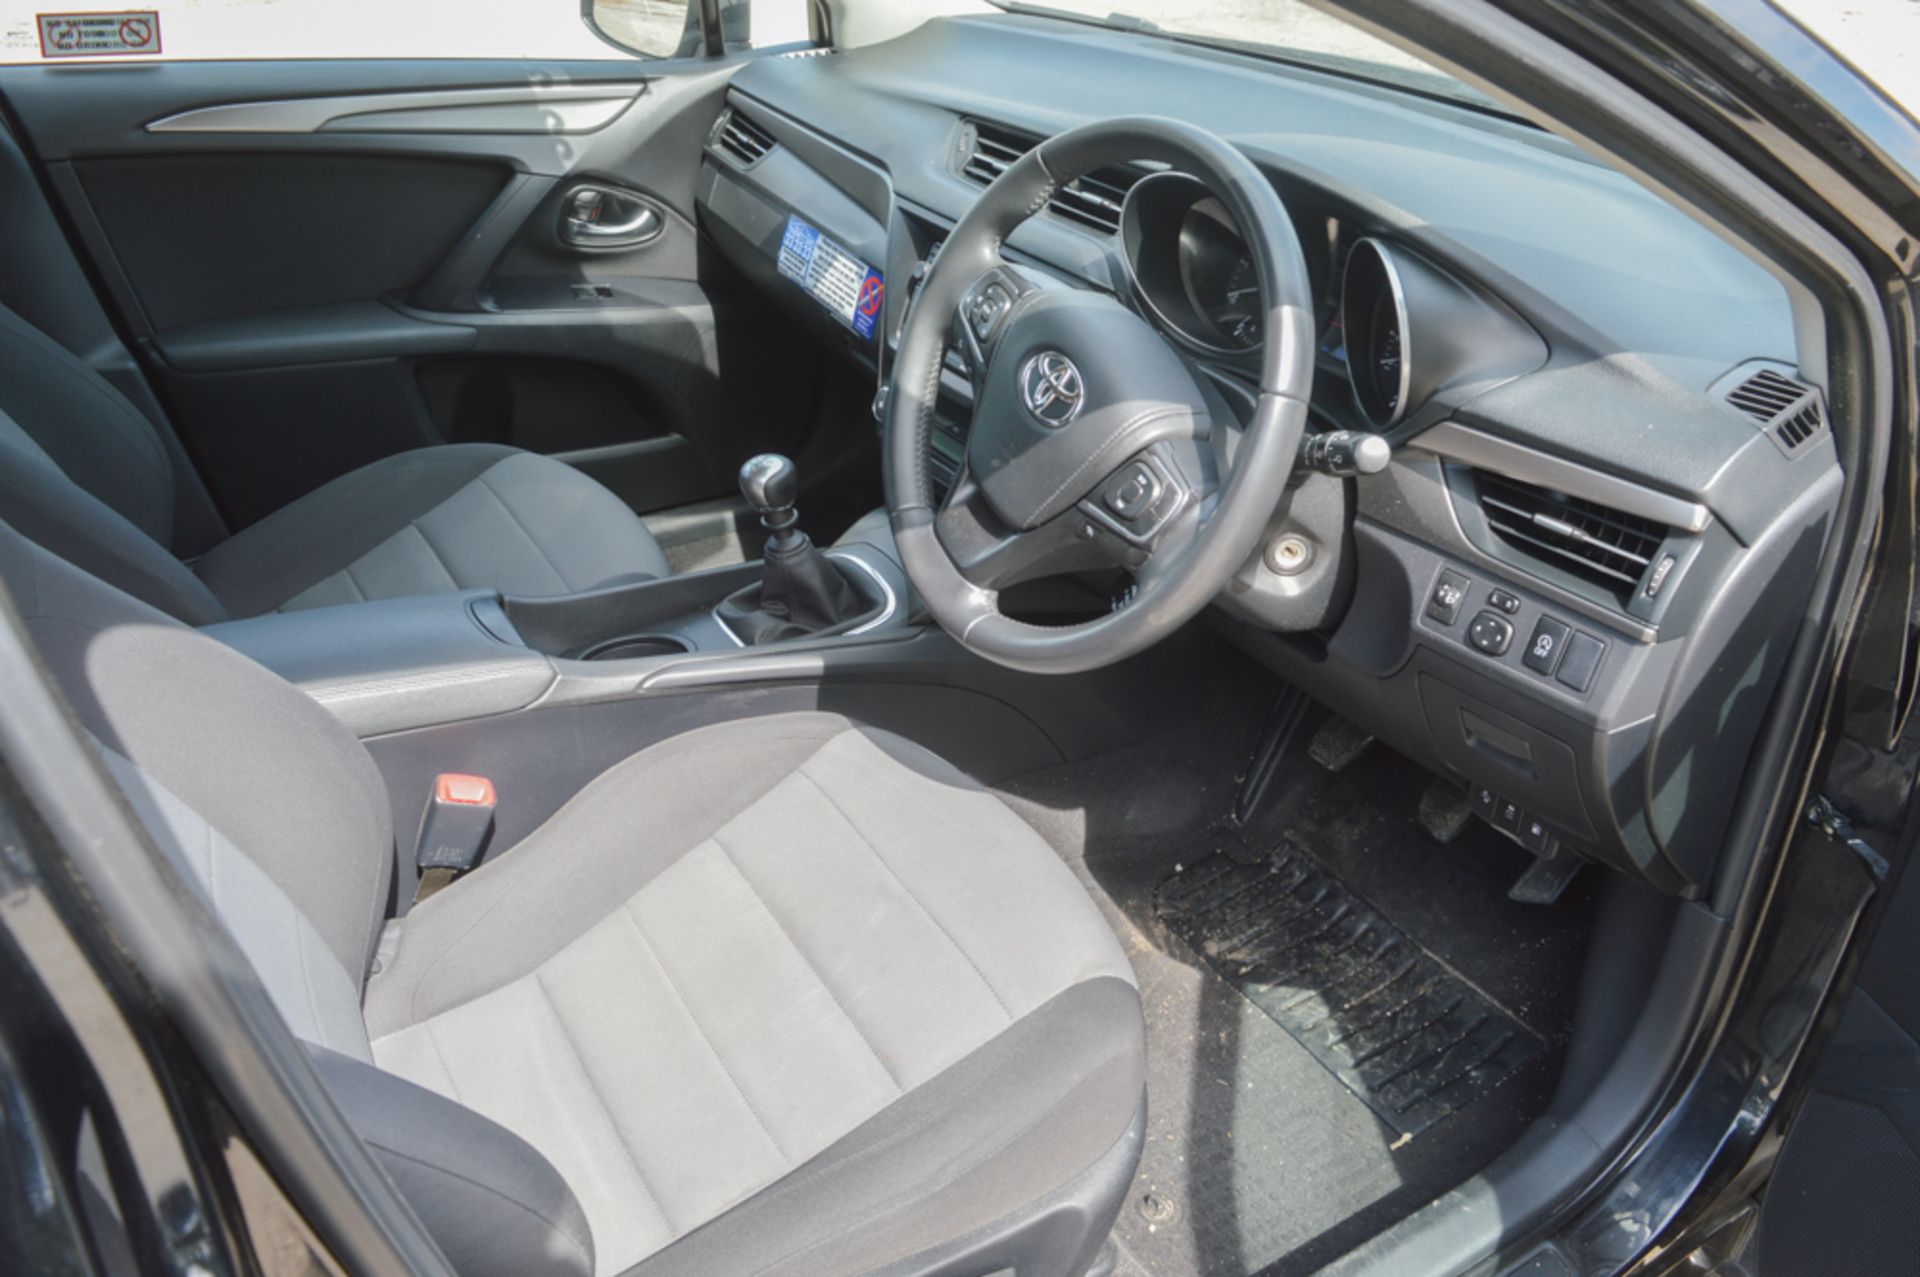 Toyota Avensis Active D-4D 5 door estate car  Registration number: MM65 SFY Date of Registration: - Image 12 of 12